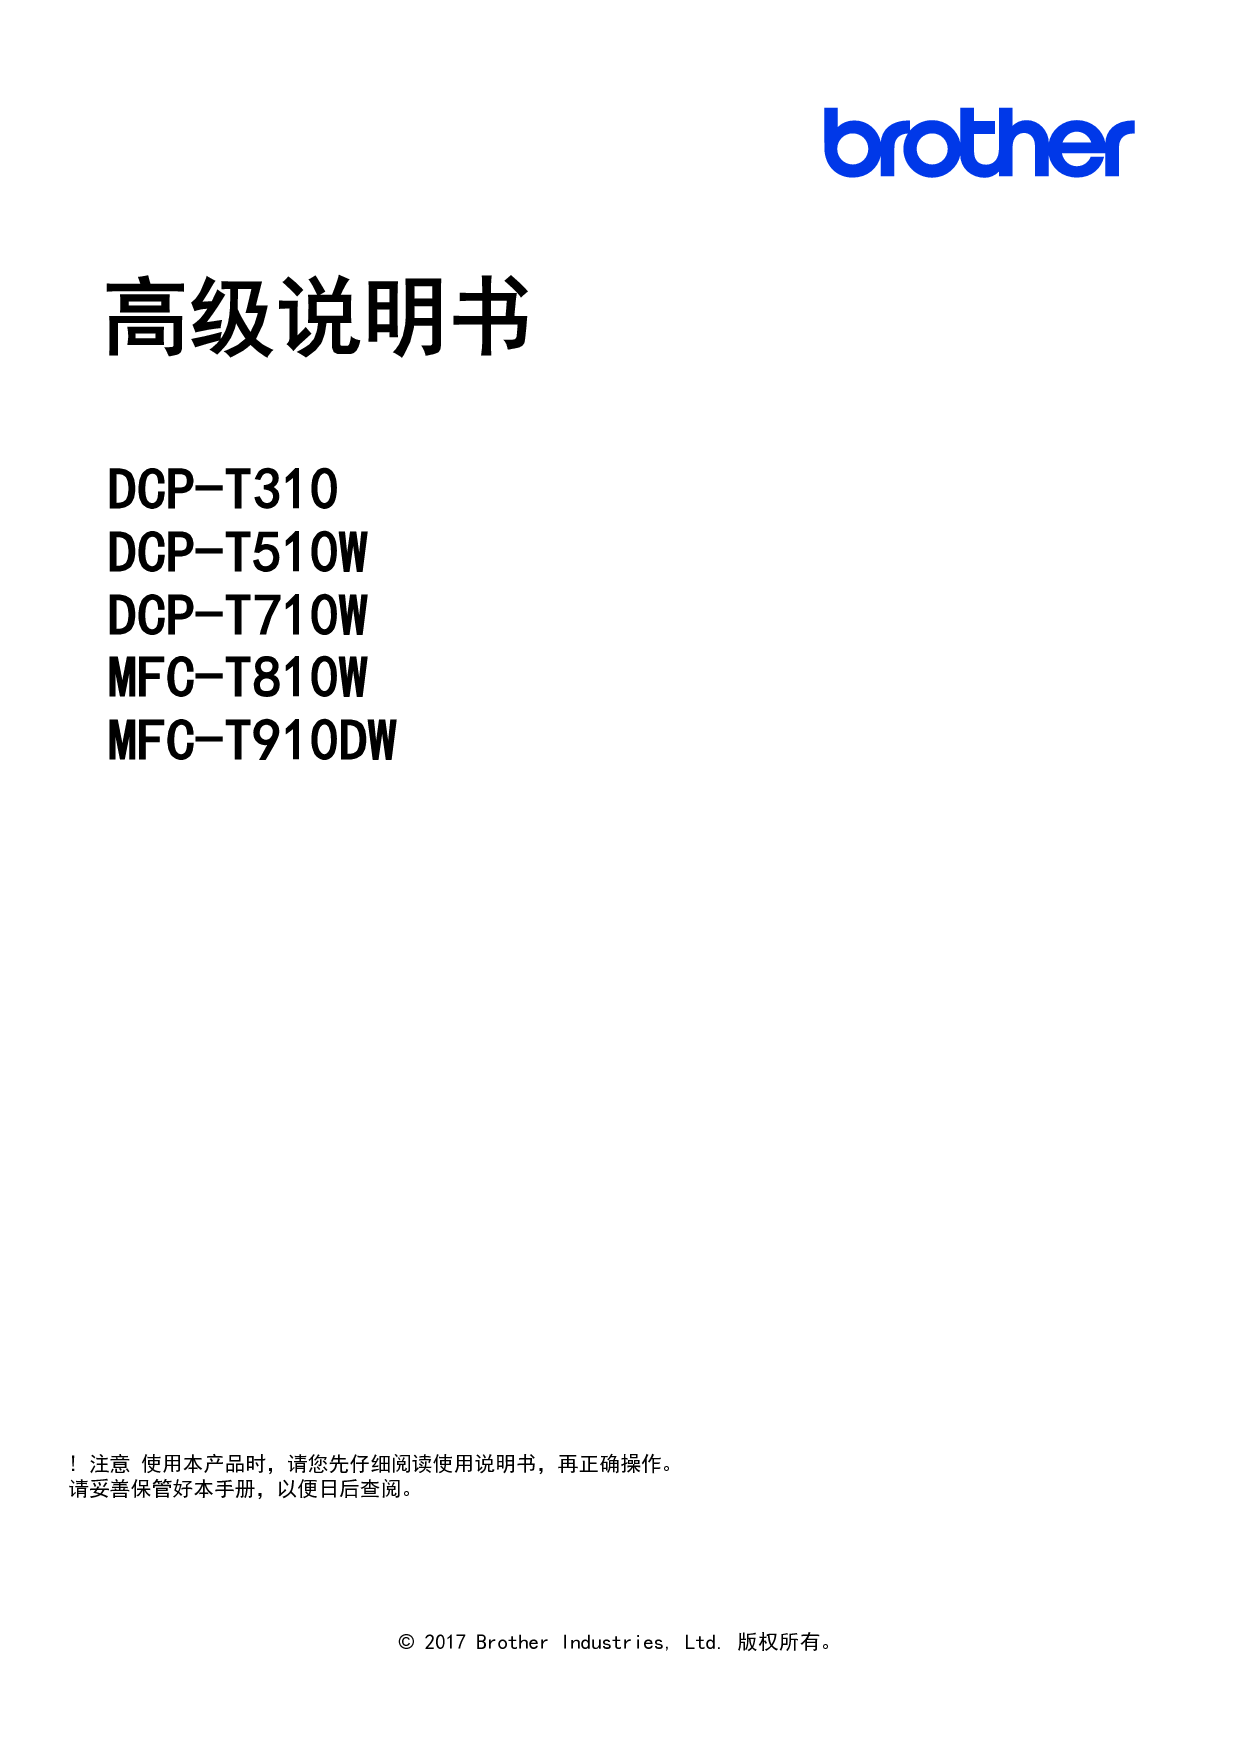 兄弟 Brother DCP-T310, MFC-T810W 高级使用说明书 封面